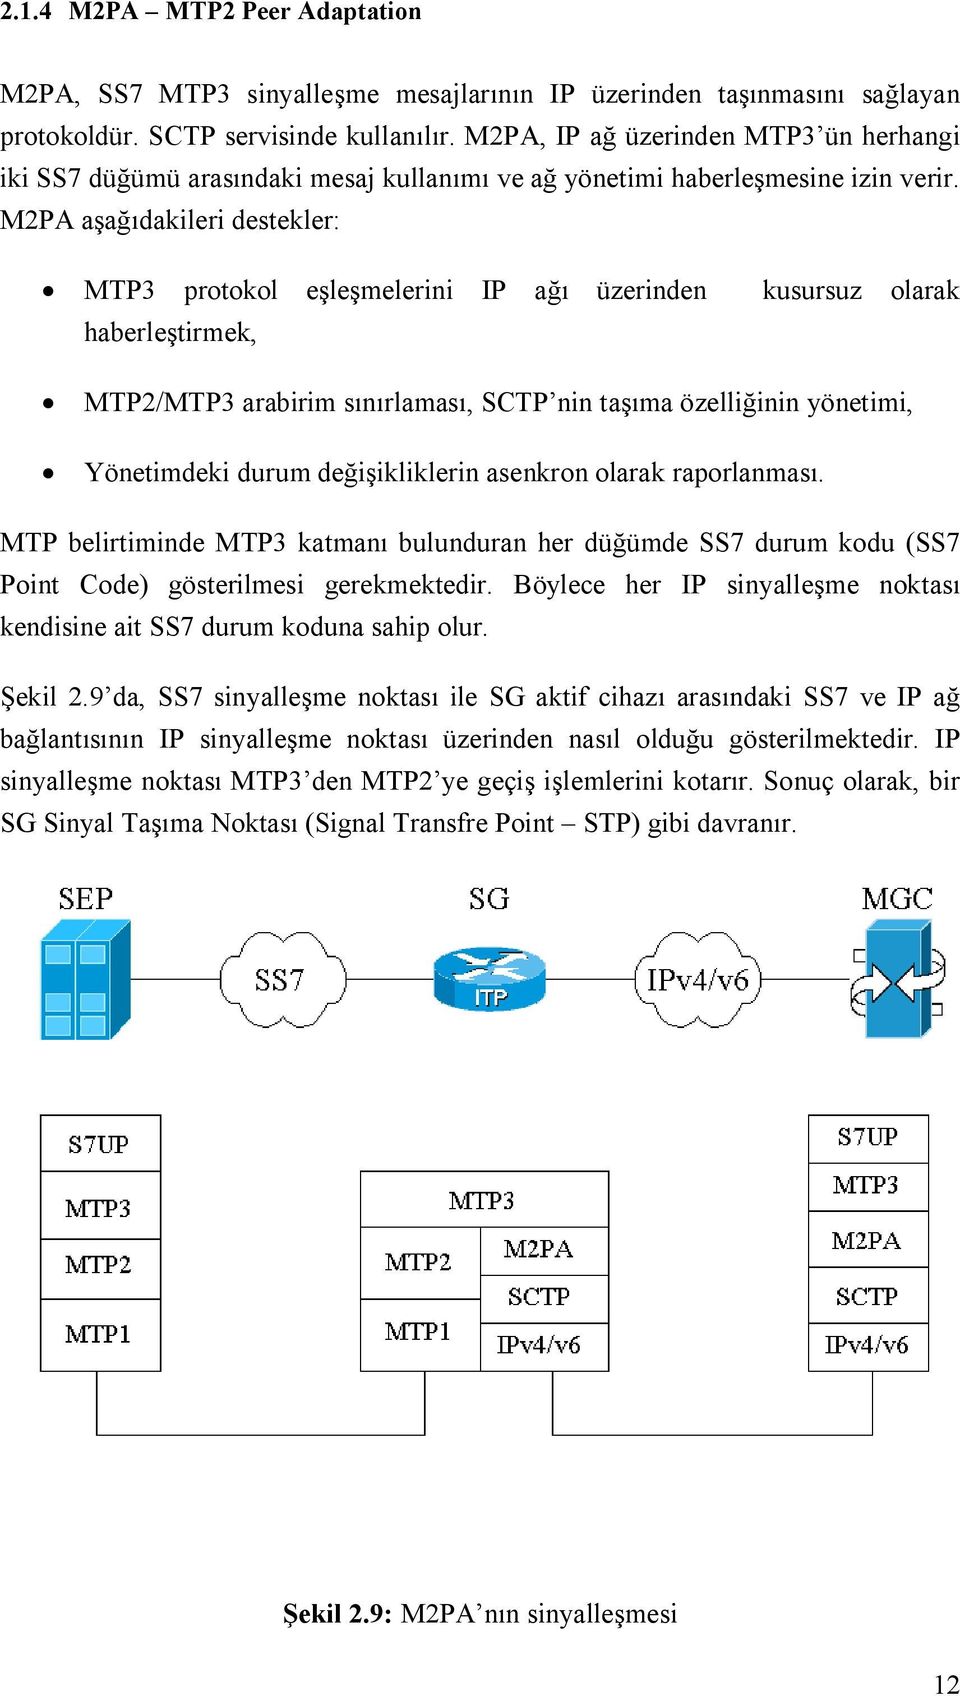 M2PA aşağıdakileri destekler: MTP3 protokol eşleşmelerini IP ağı üzerinden kusursuz olarak haberleştirmek, MTP2/MTP3 arabirim sınırlaması, SCTP nin taşıma özelliğinin yönetimi, Yönetimdeki durum